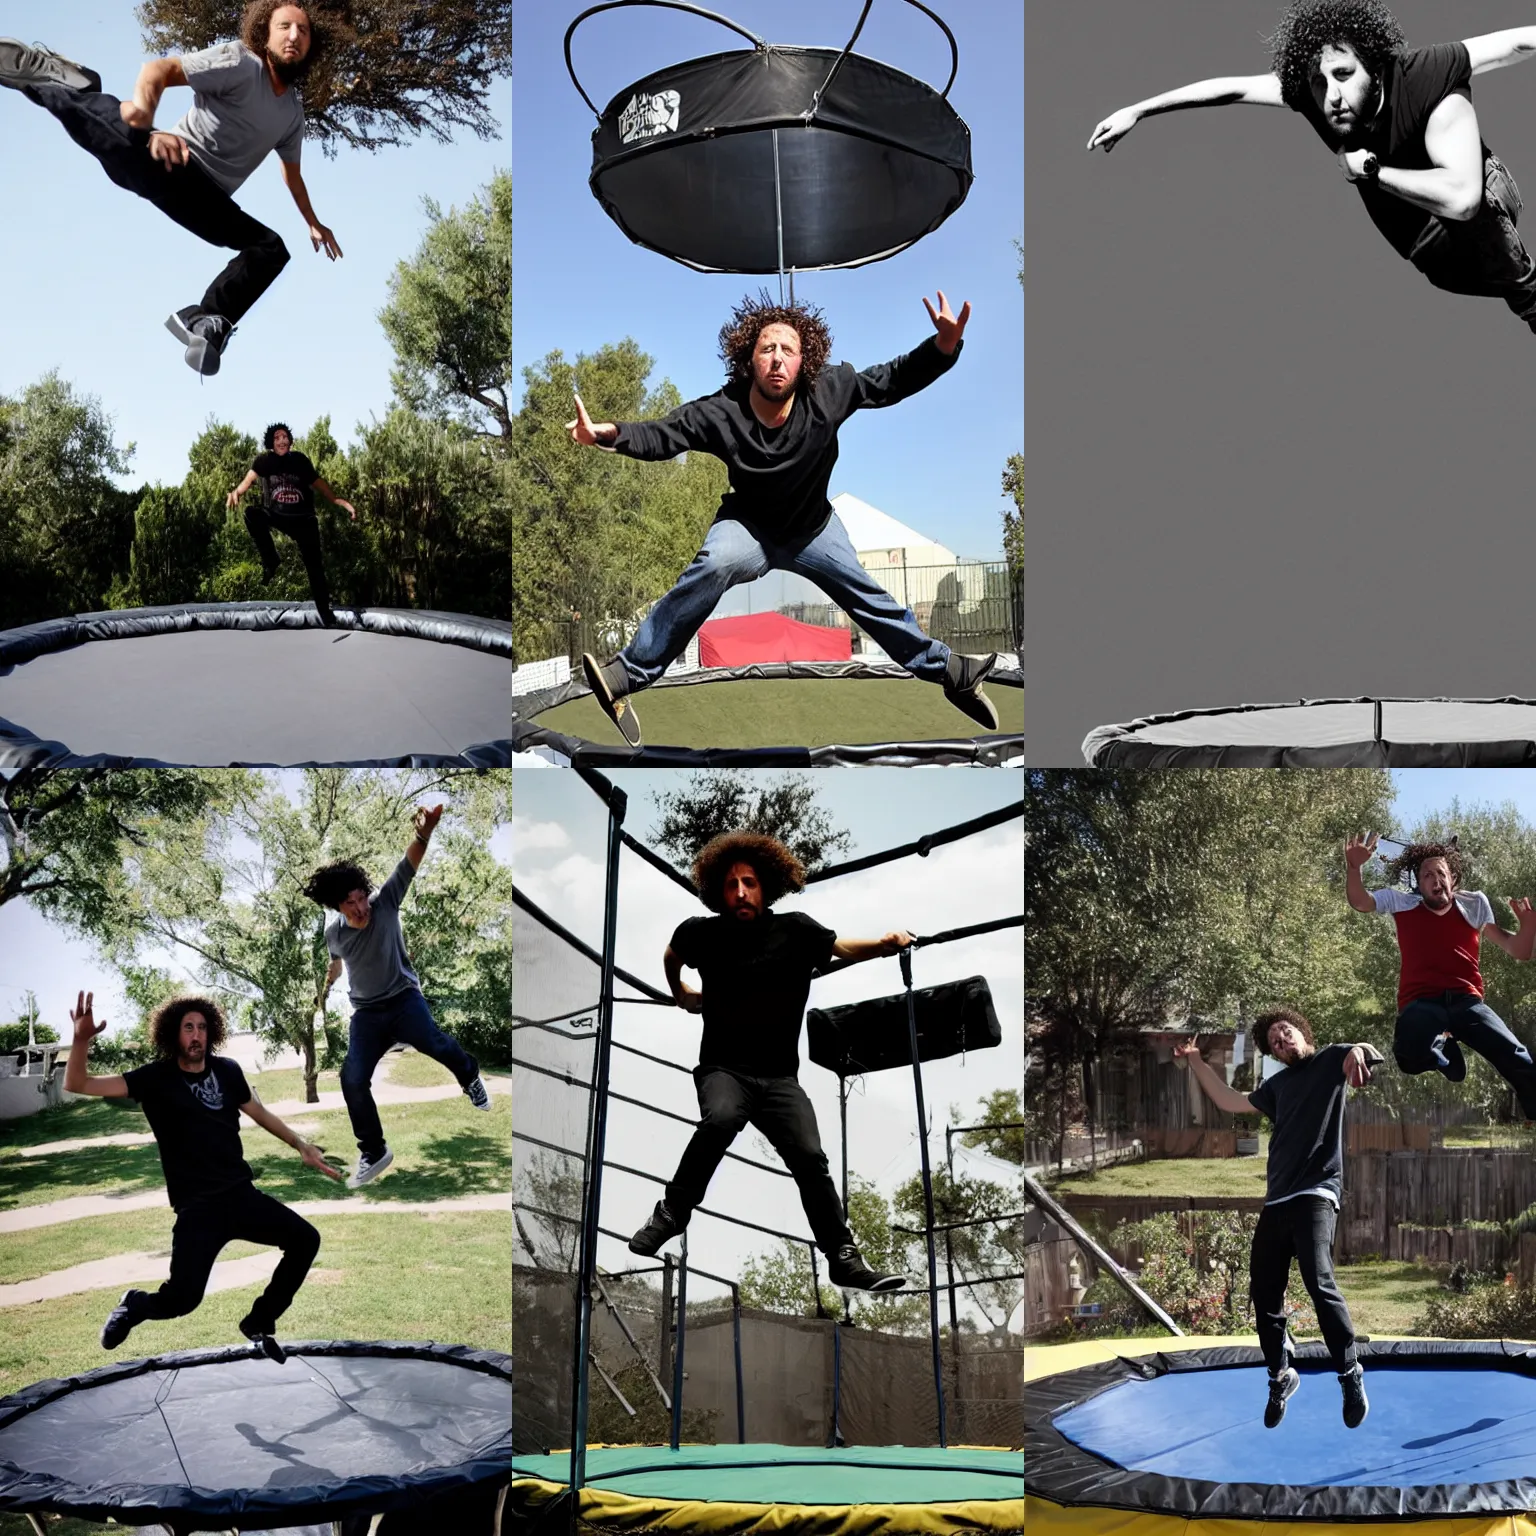 Prompt: Zack de la Rocha jumping on a trampoline